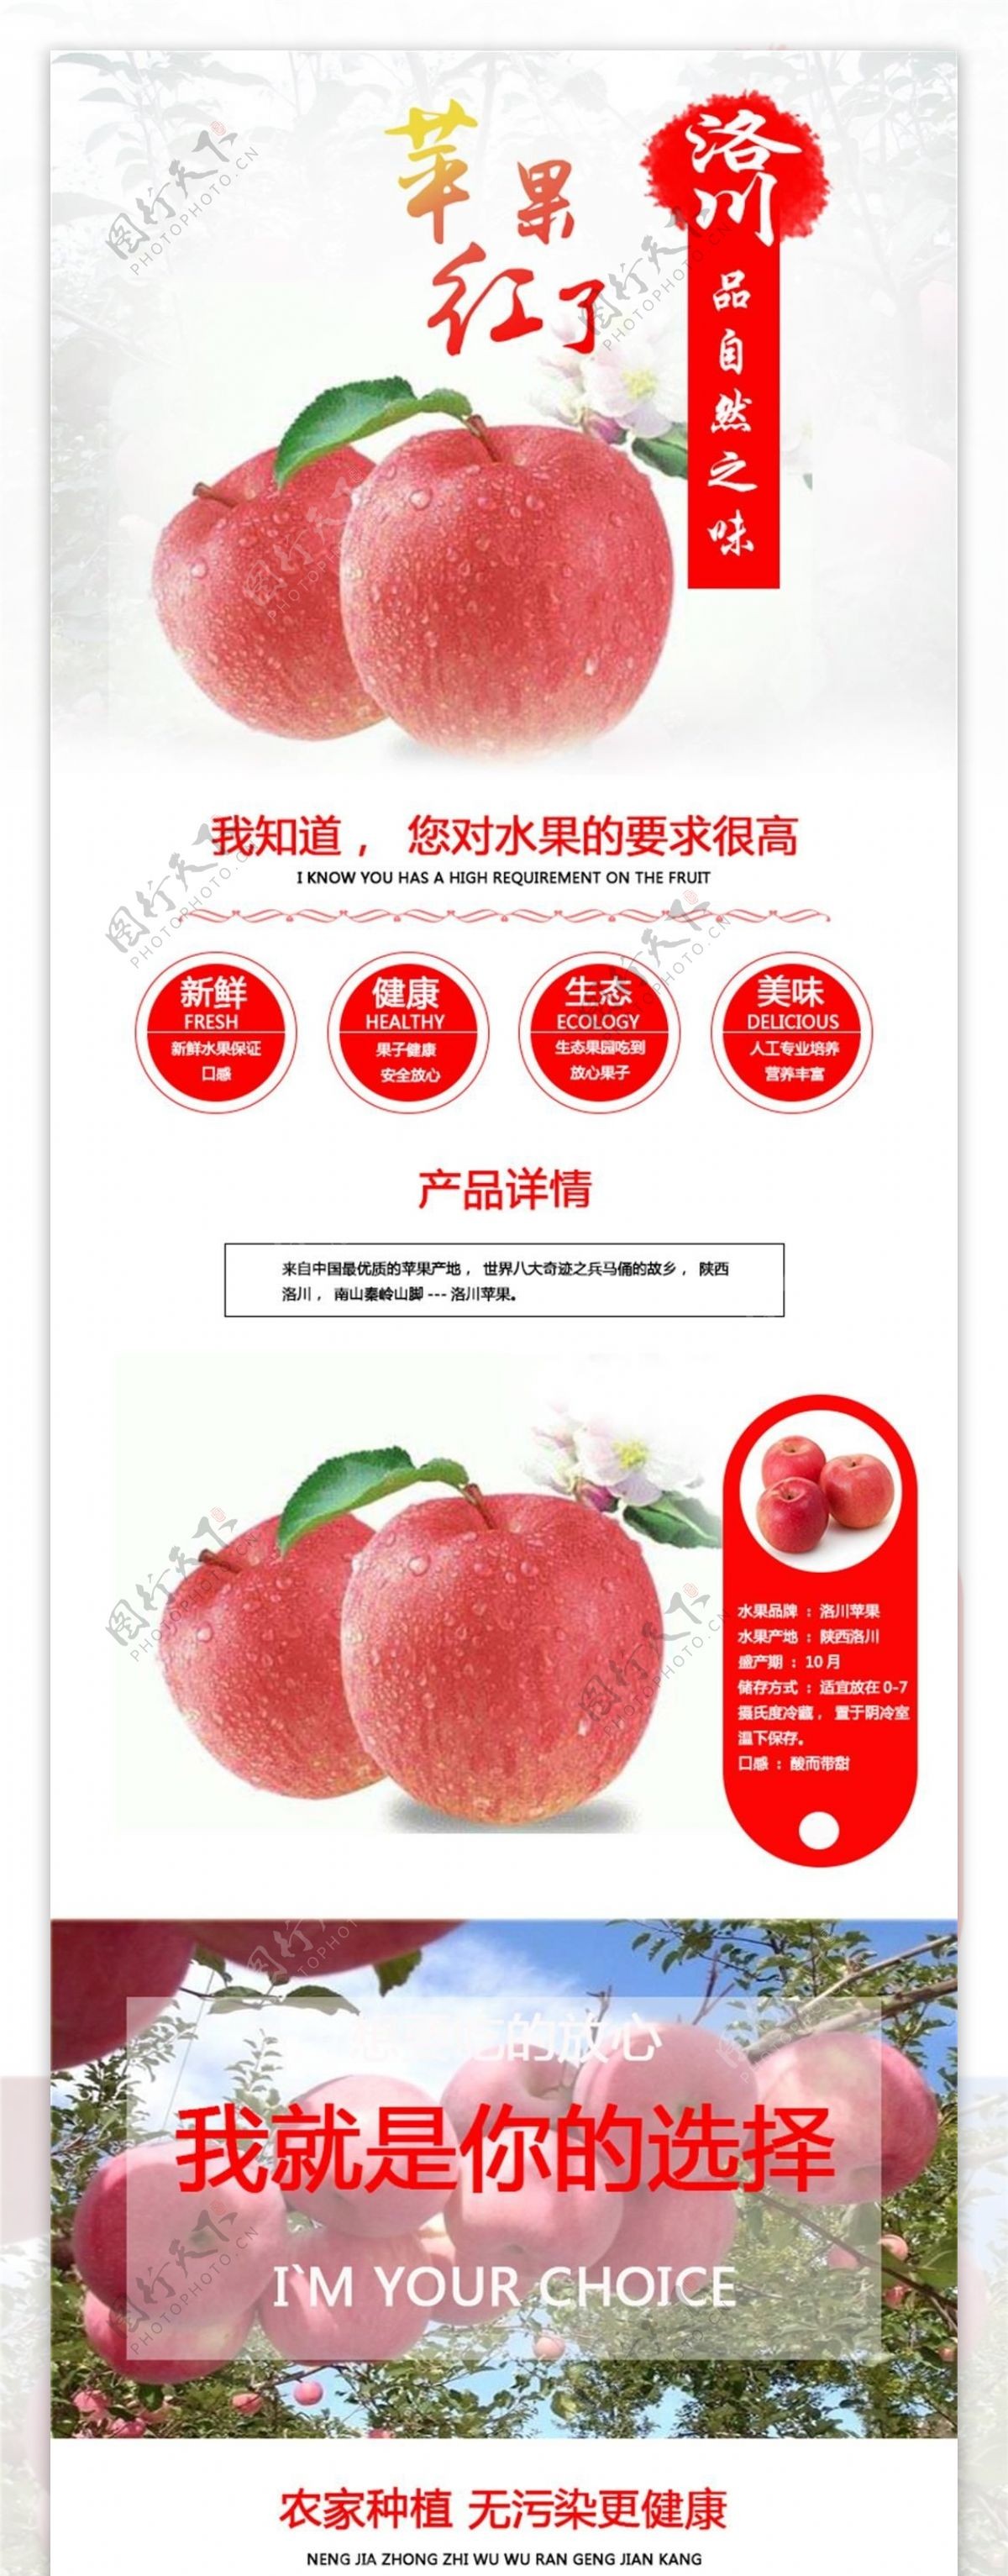 电商淘宝洛川苹果淡色背景水果详情模板